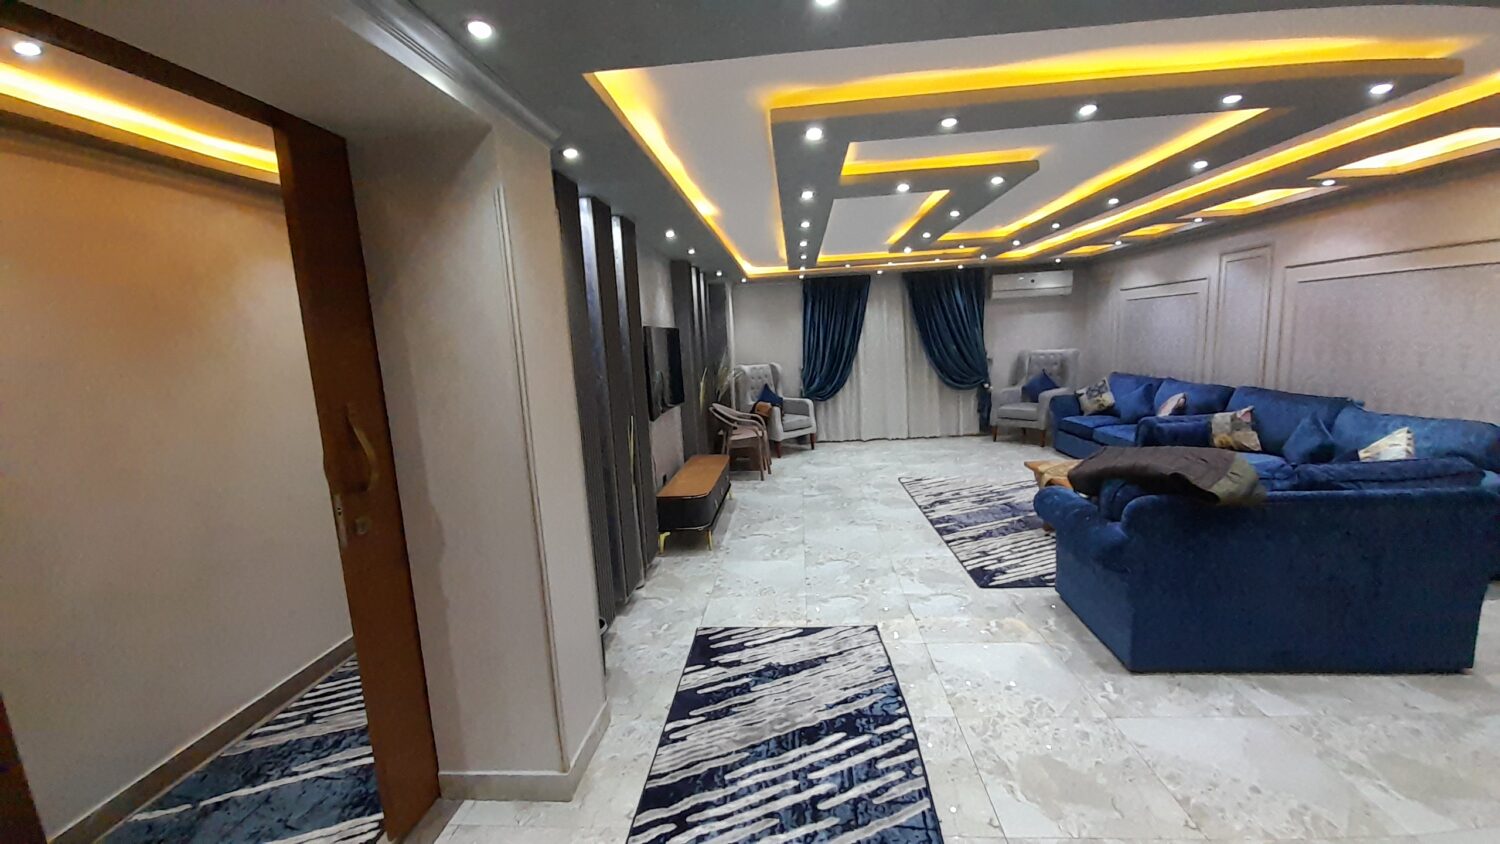 شقة مفروشة للايجار فى شارع شهاب 250م فرش جديد فندقية